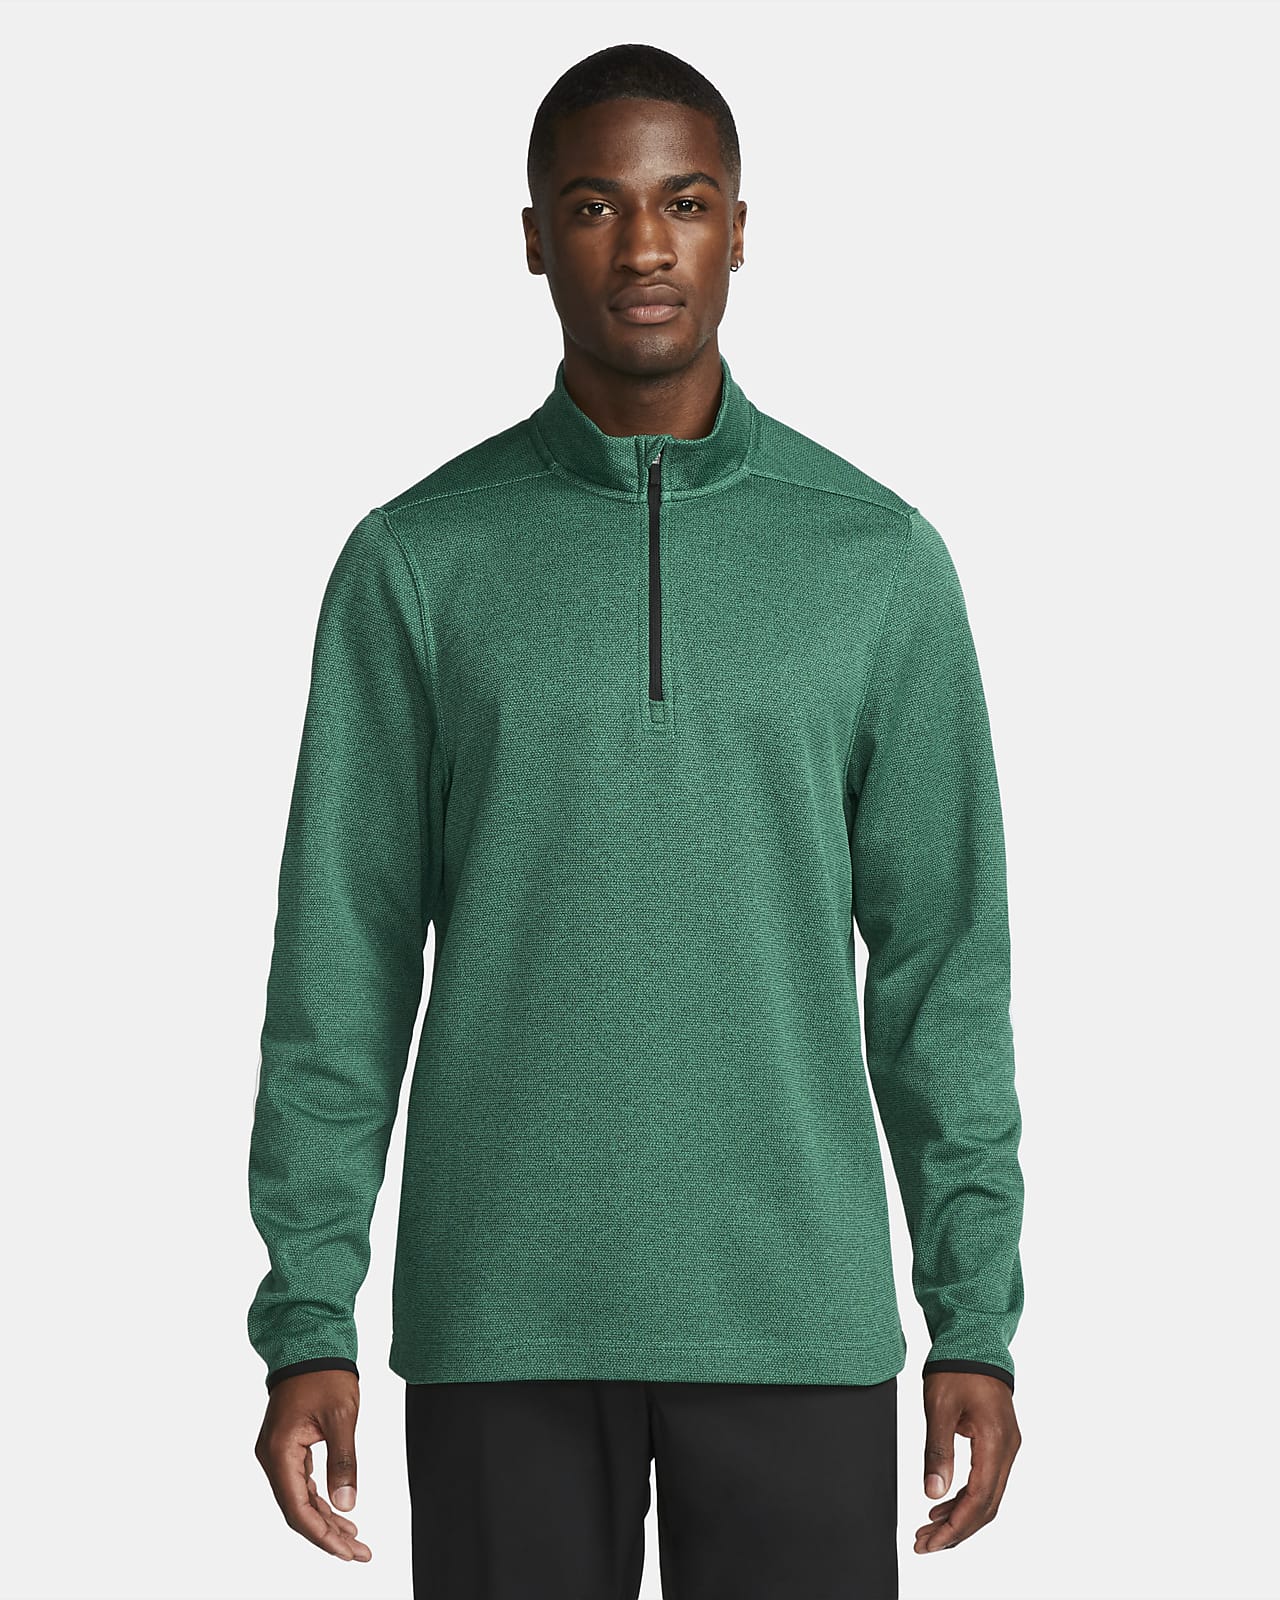 Green Quarter-Zip Sweatshirts for Men